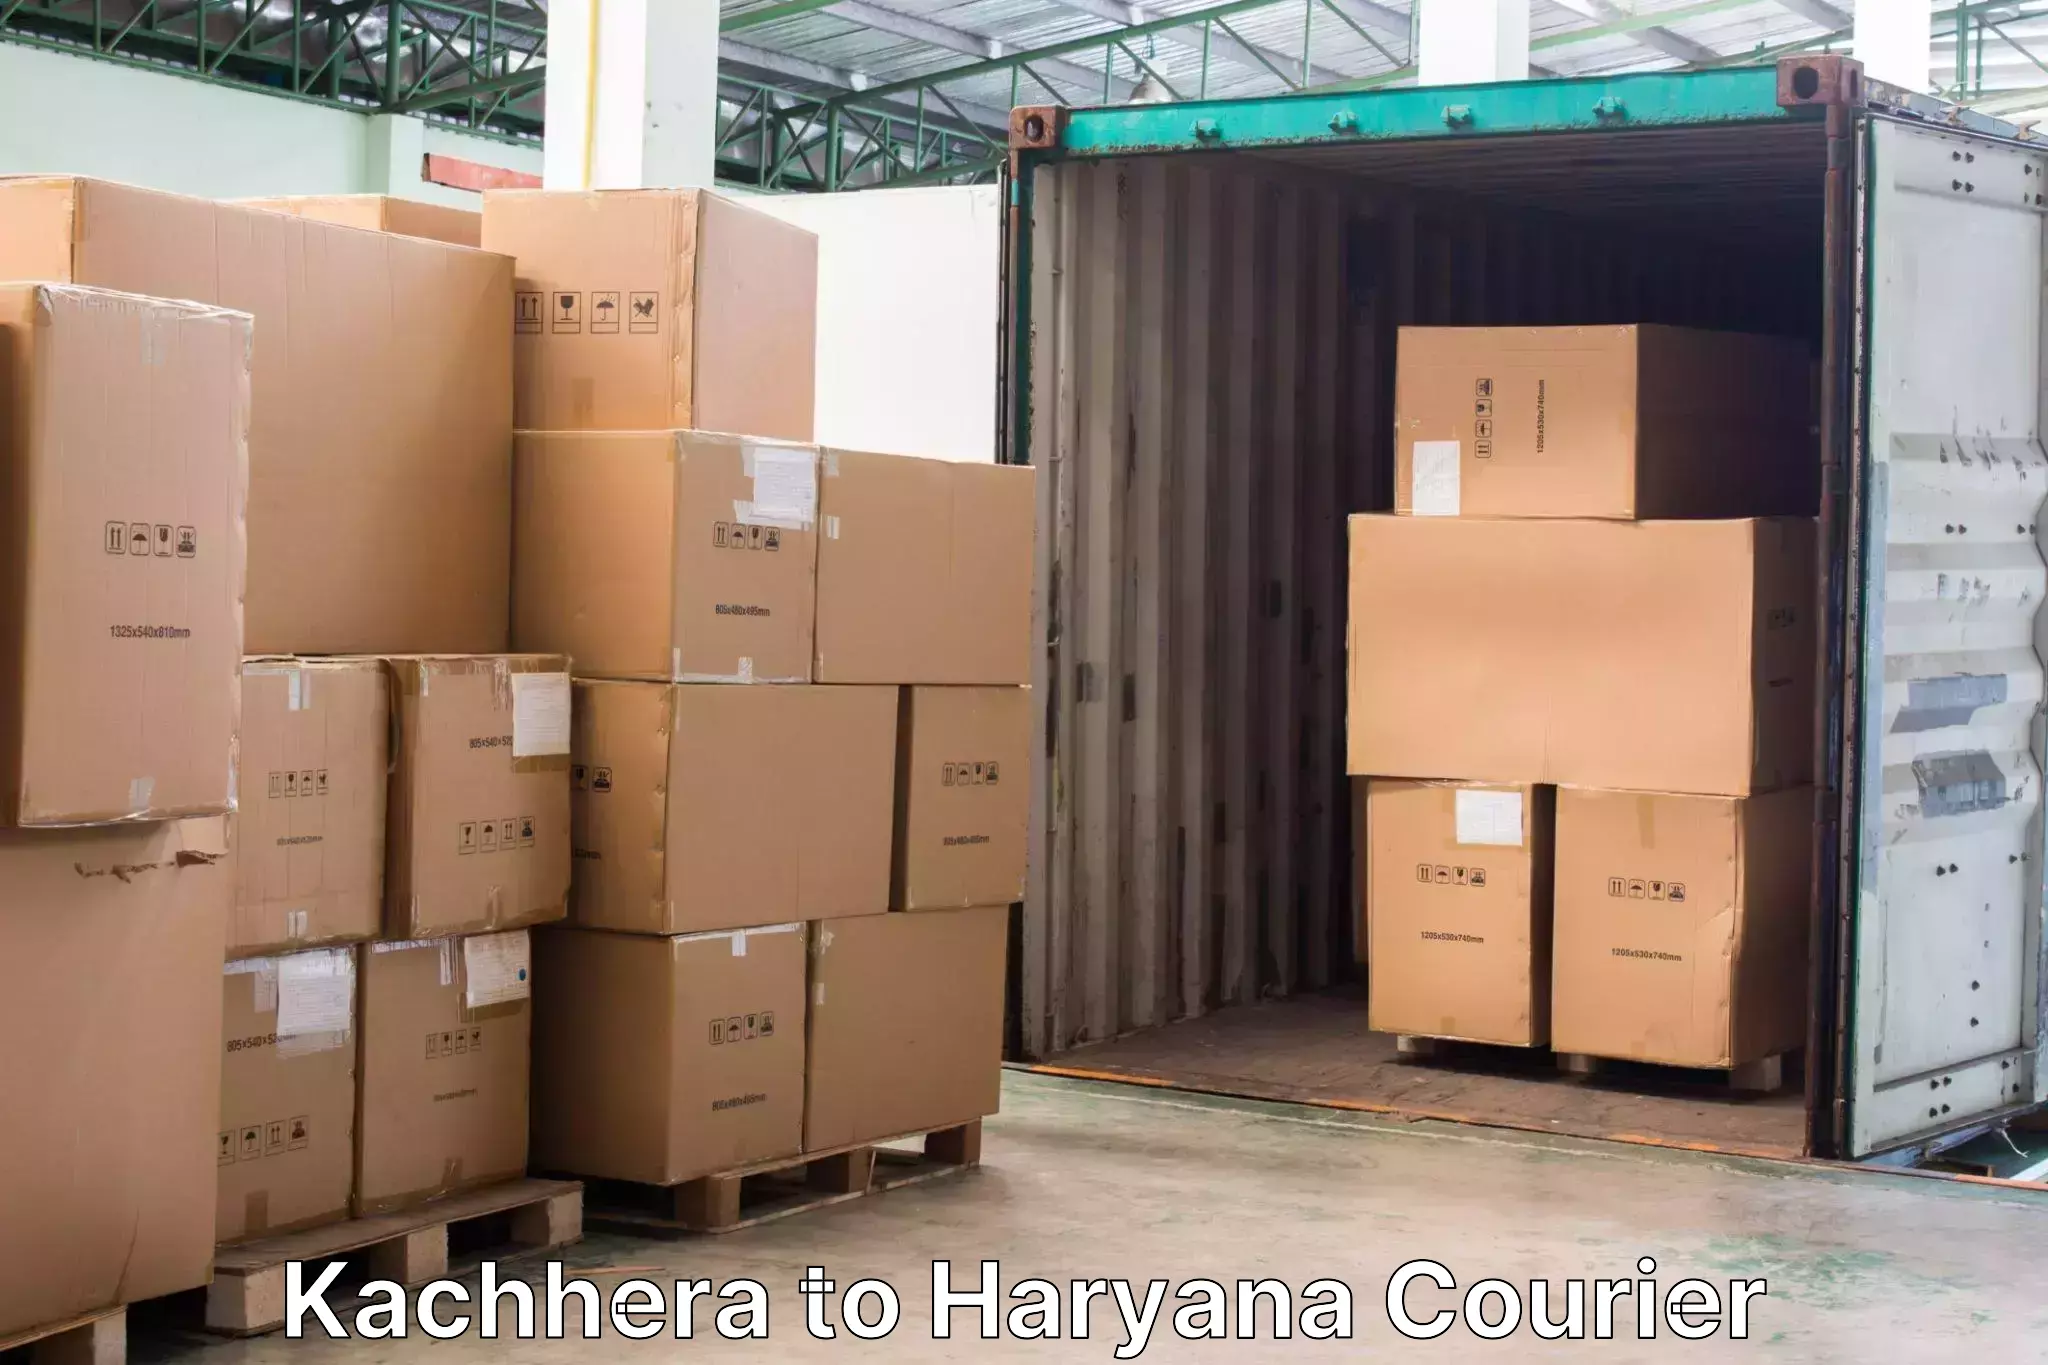 Baggage transport network Kachhera to Rewari